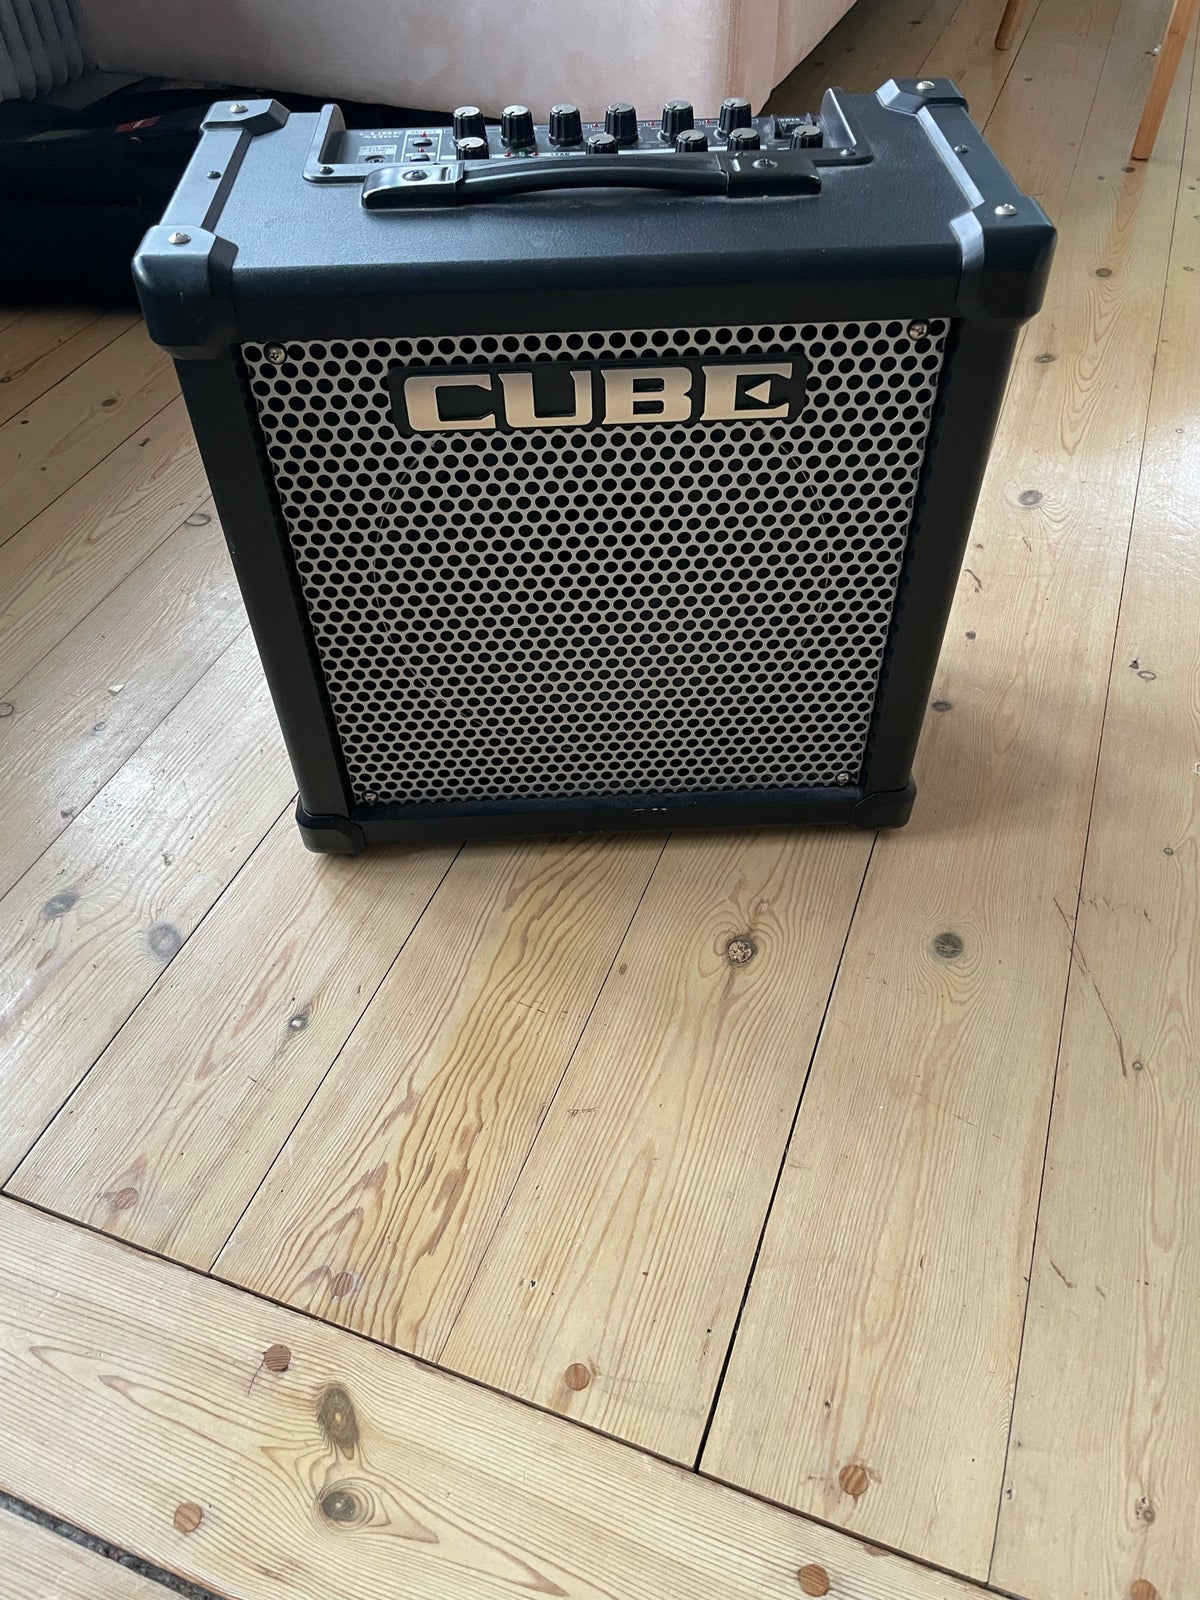 Guitarcombo, Roland Cube 40GX, 43 W